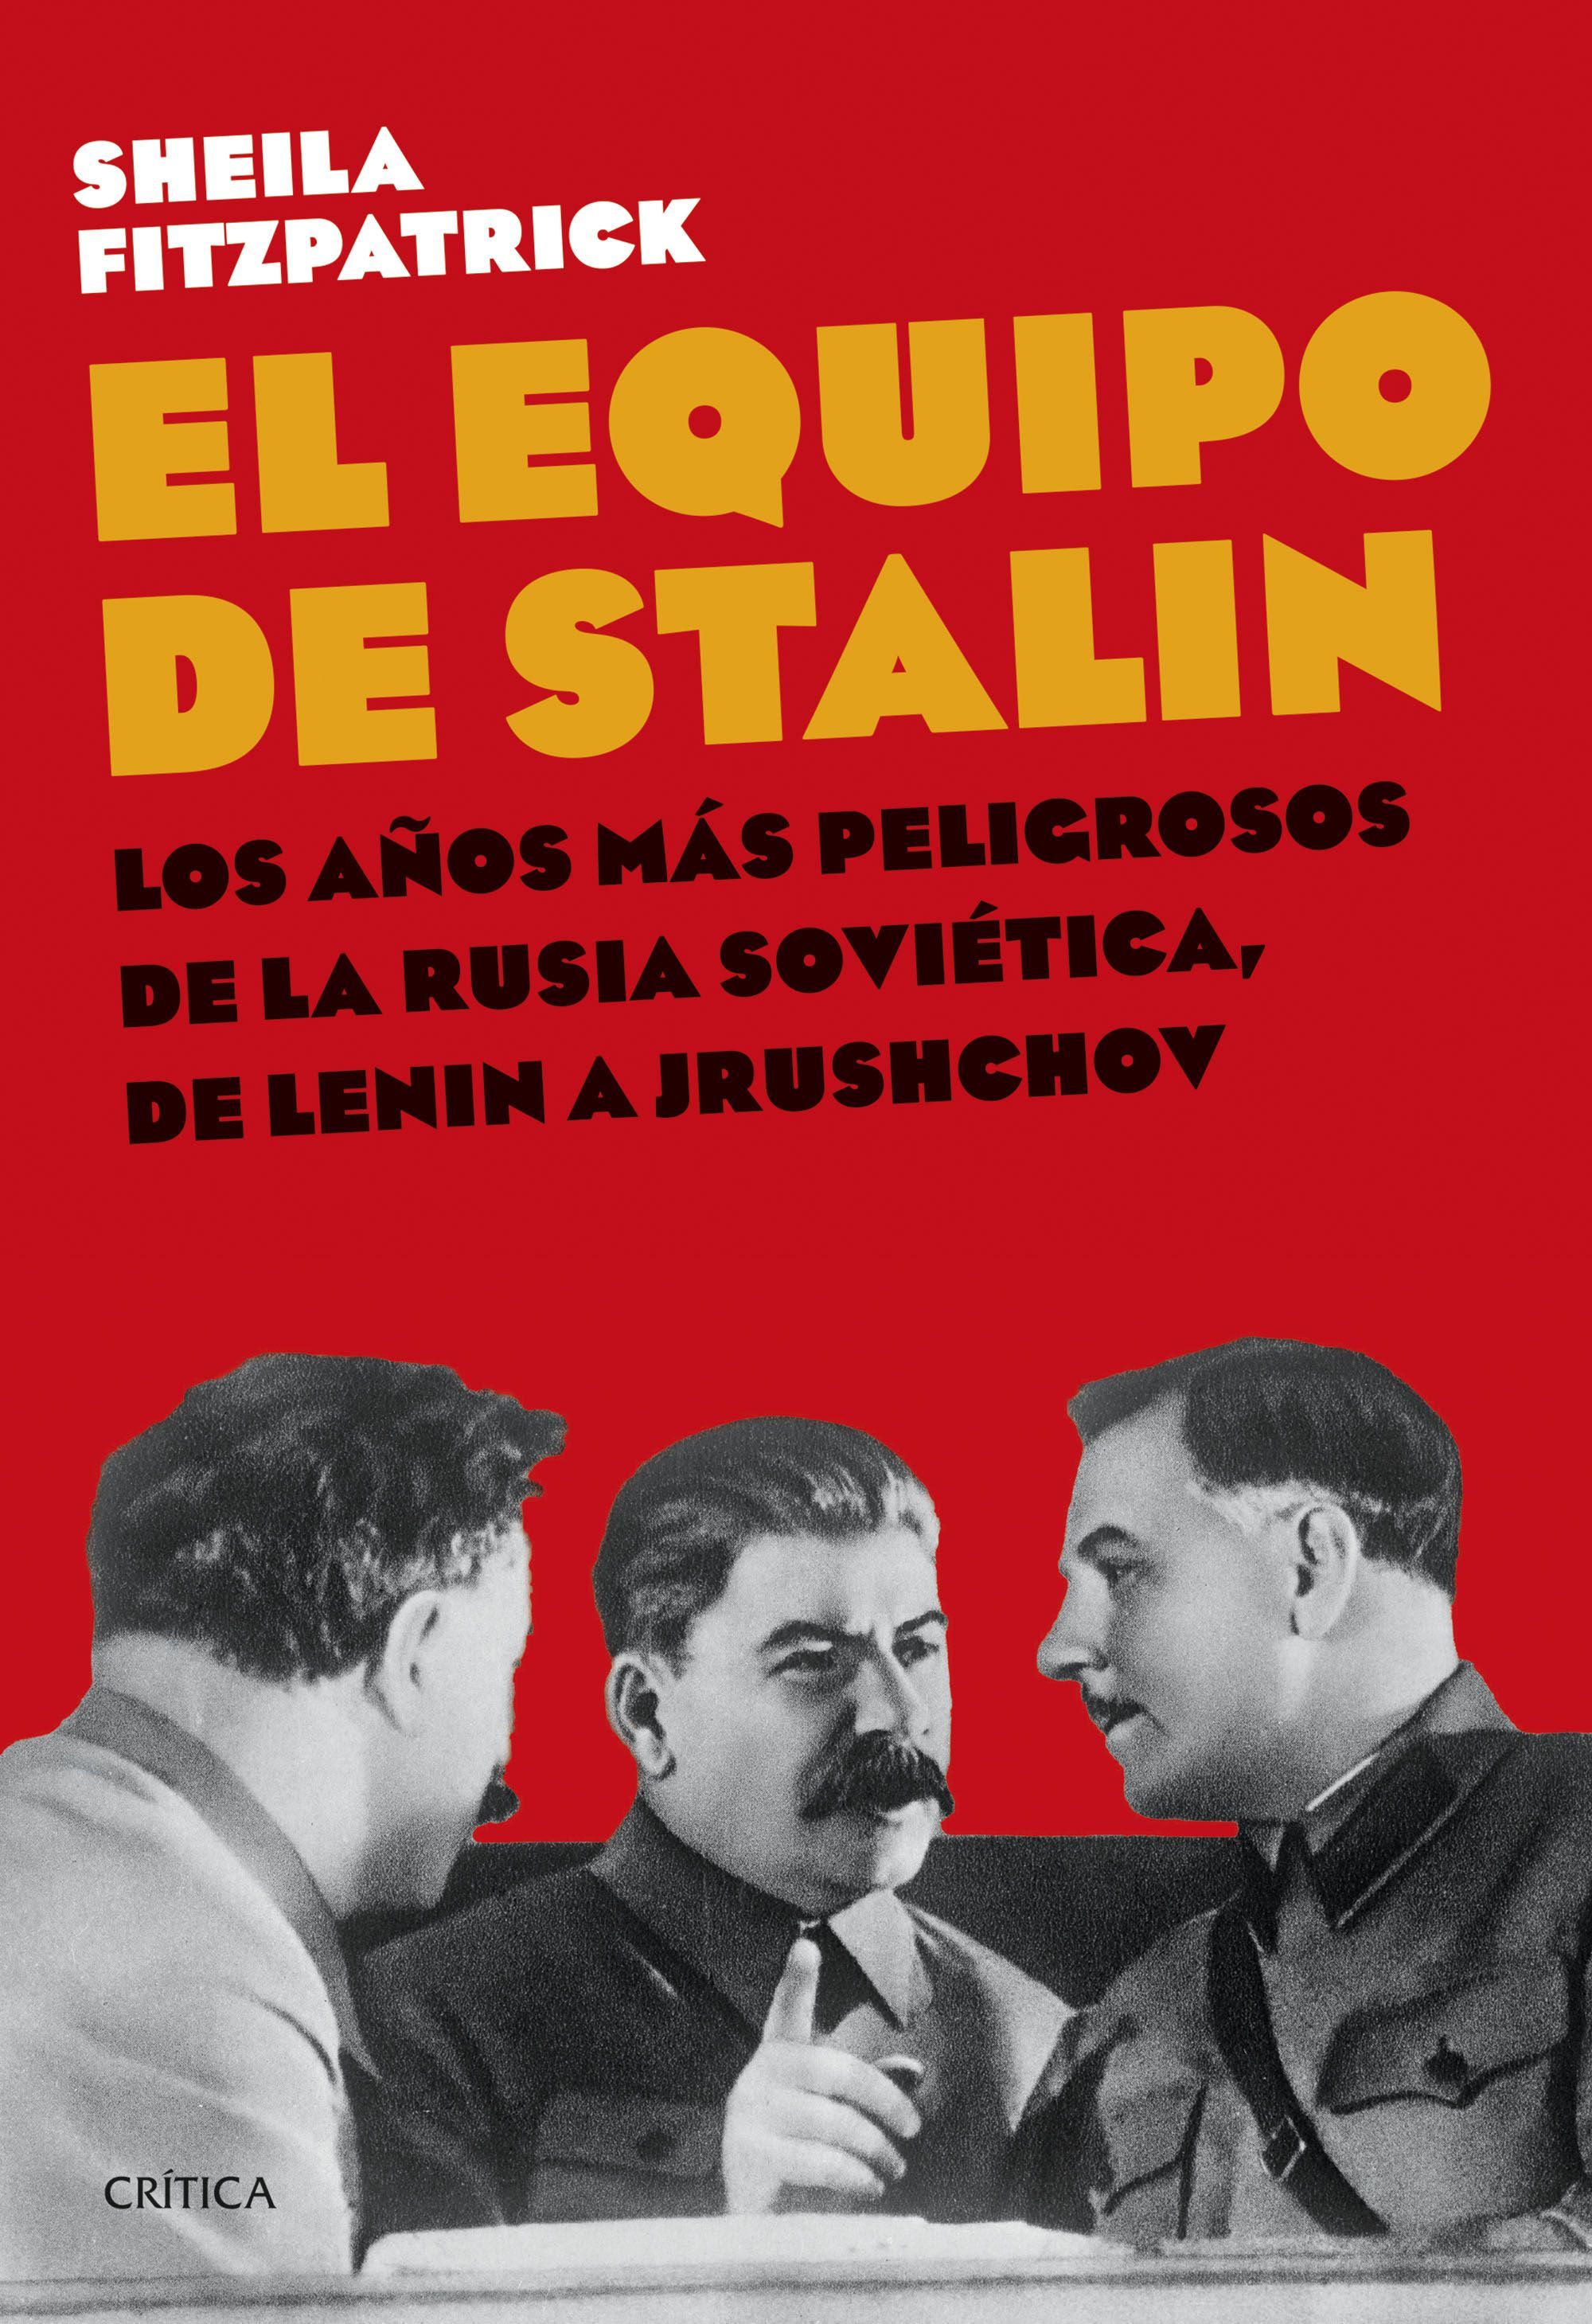 EL EQUIPO DE STALIN. LOS AÑOS MÁS PELIGROSOS DE LA RUSIA SOVIÉTICA, DE LENIN A JRUSHCHOV